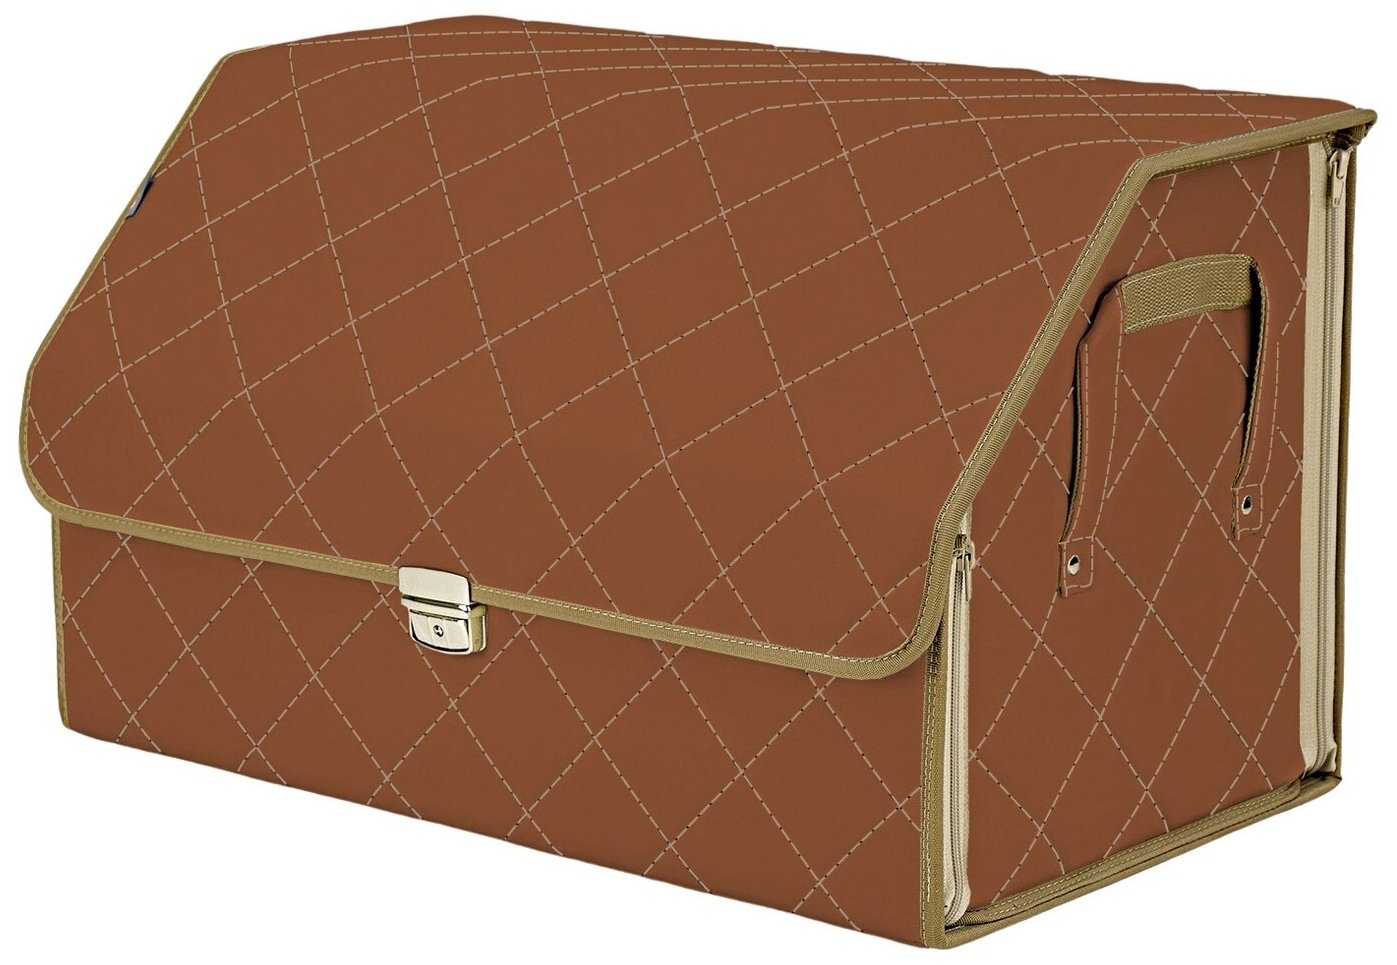 Органайзер-саквояж в багажник "Союз Премиум" (размер XL). Цвет: светло-коричневый с бежевой прострочкой Ромб.